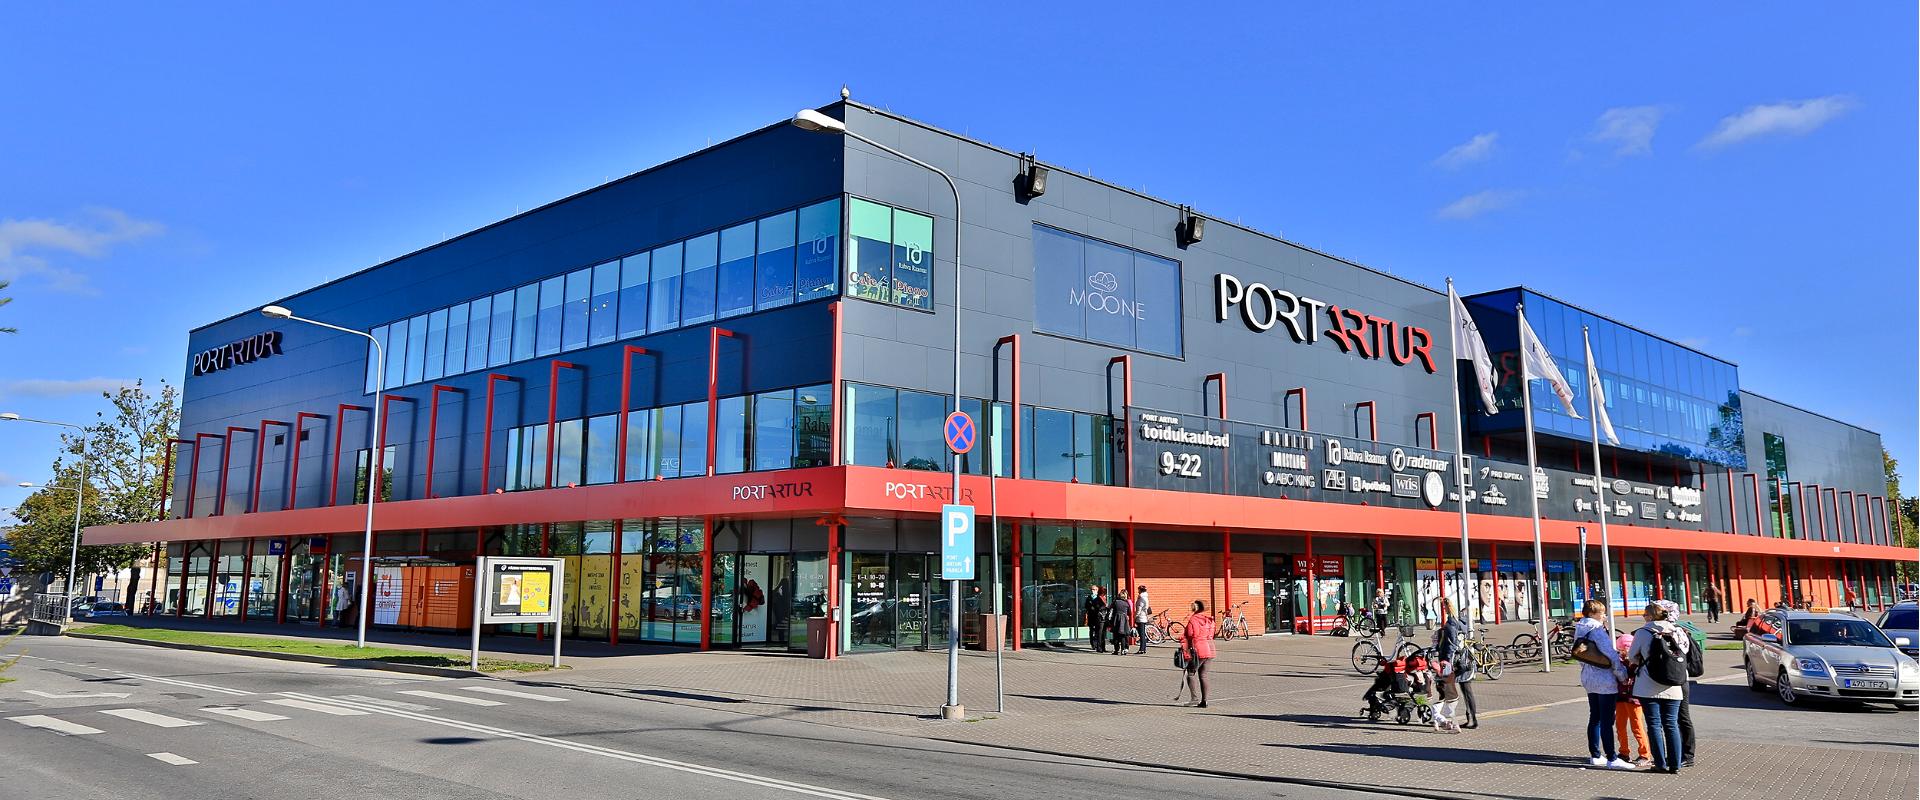 Port Artur Einkaufszentrum